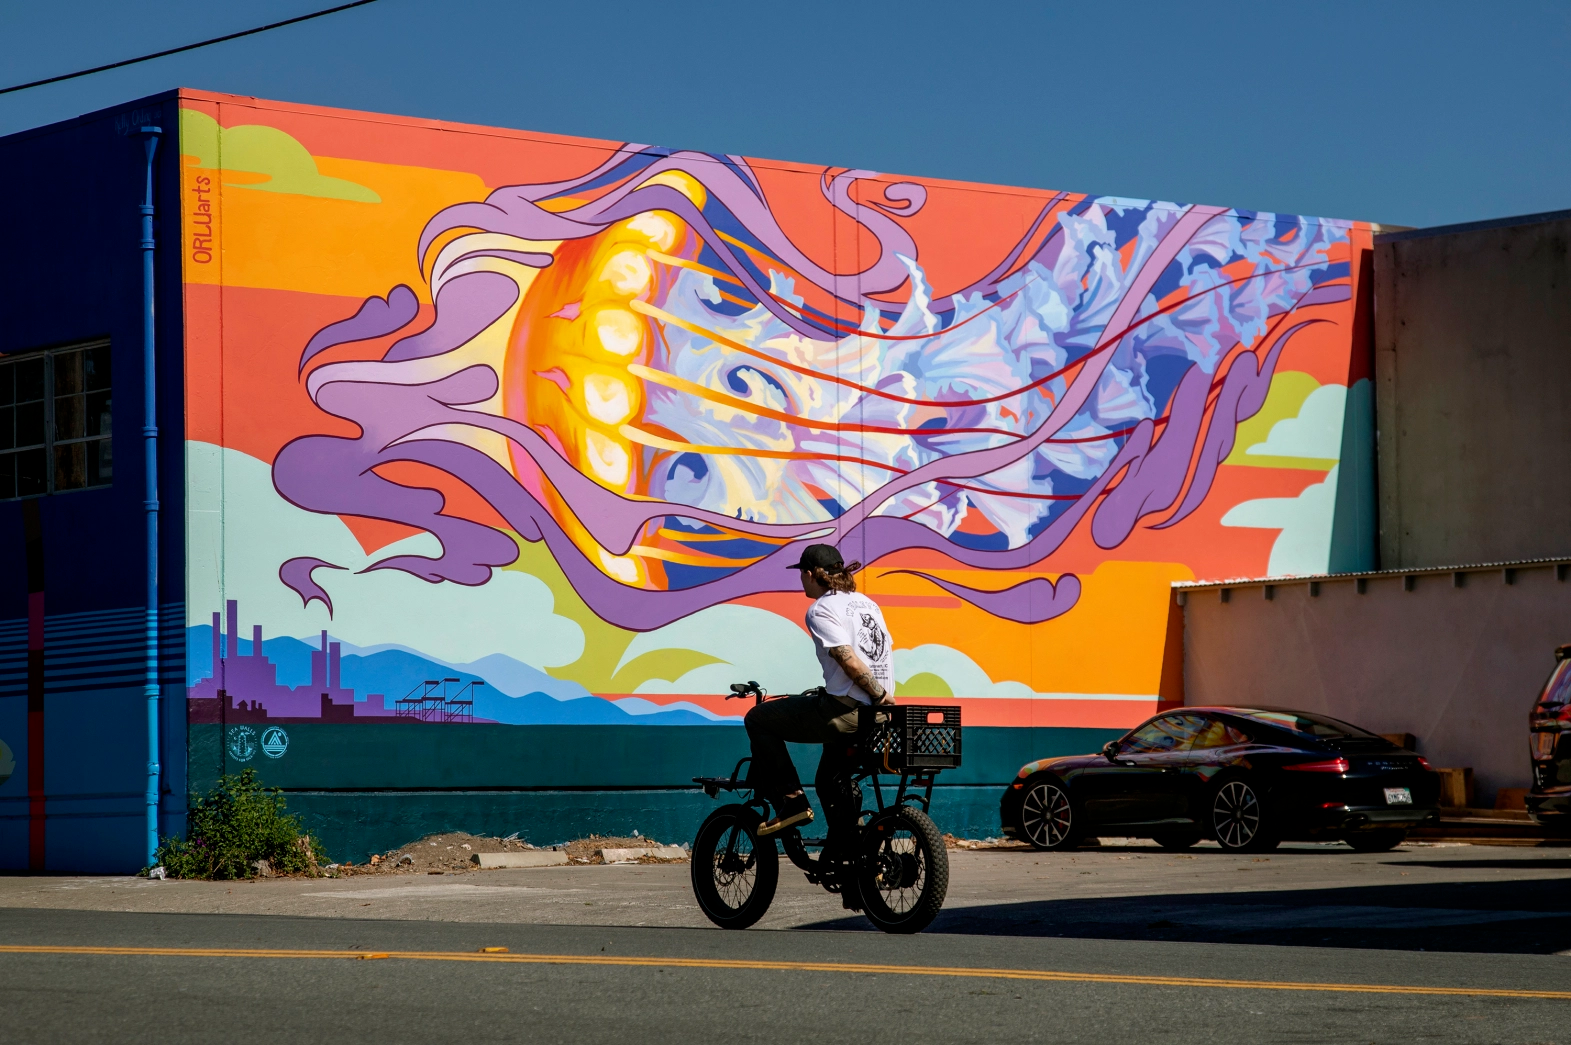 Ein Radfahrer fährt an einem riesigen, farbenfrohen Wandgemälde vorbei, auf dem eine Qualle abgebildet ist